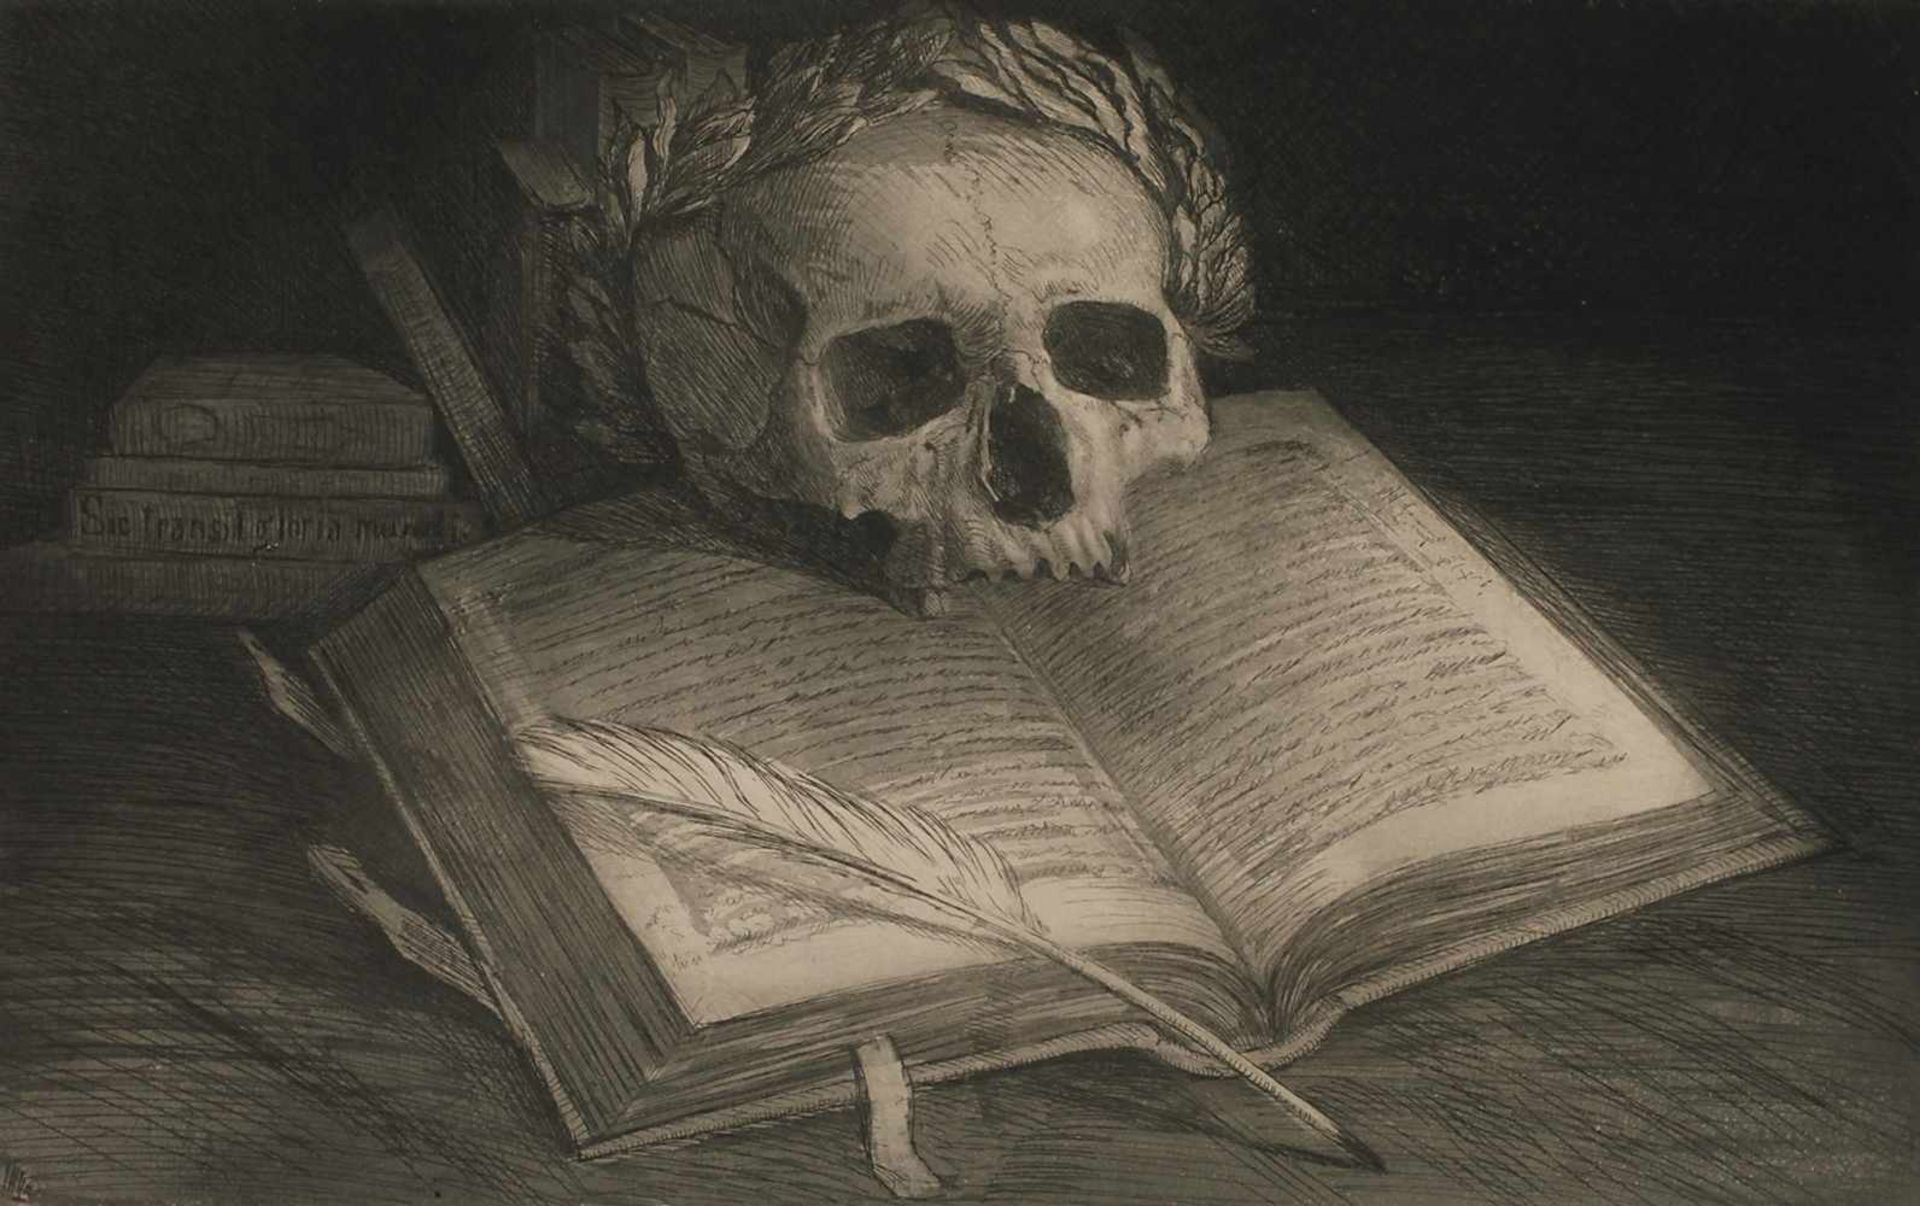 Carl Müller-Baumgarten, Memento moriSchädel mit Lorbeerkranz auf aufgeschlagenem Buch vor dunklem